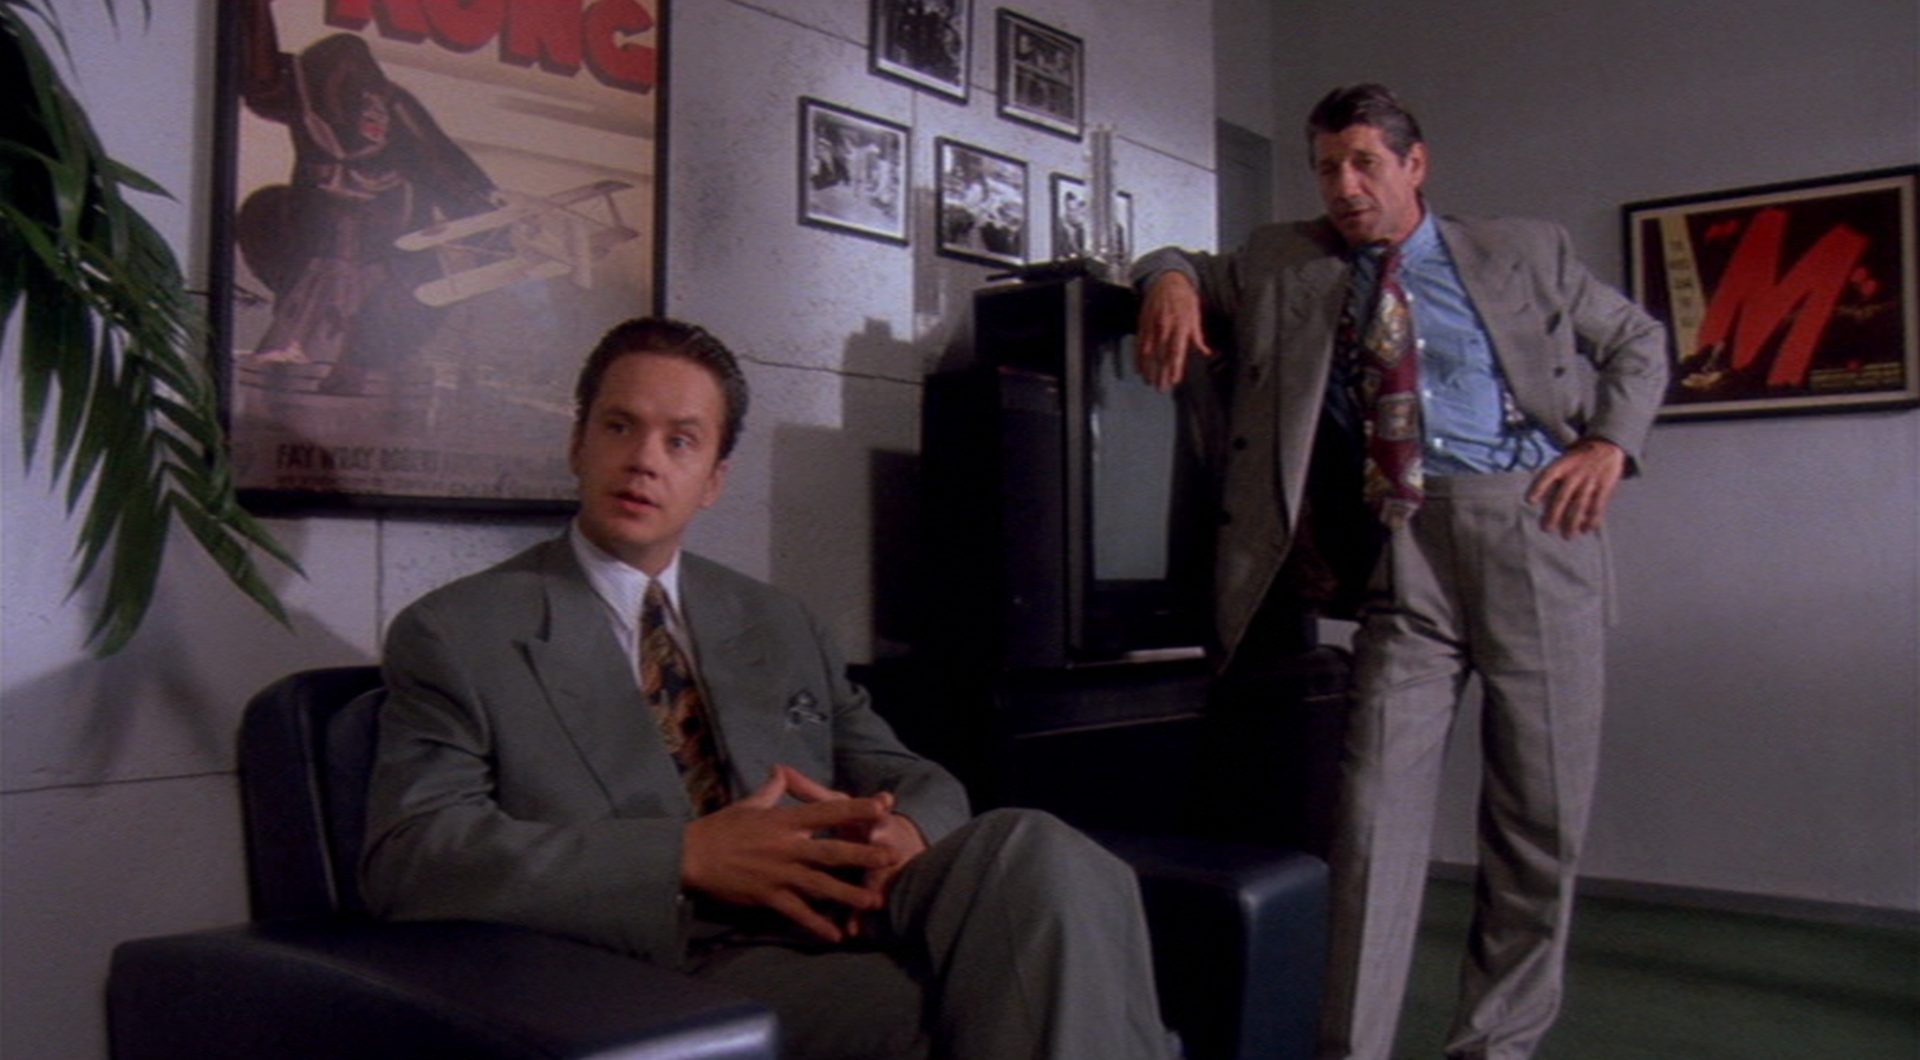 Griffin Mill sitzt in gespielter Gelassenheit in seinem Büro, hinter ihm ein klassisches „King Kong“-Filmplakat, neben ihm steht der Troubleshooter des Studios, gespielt von Fred Ward, an einen Röhrenfernseher gelehnt.